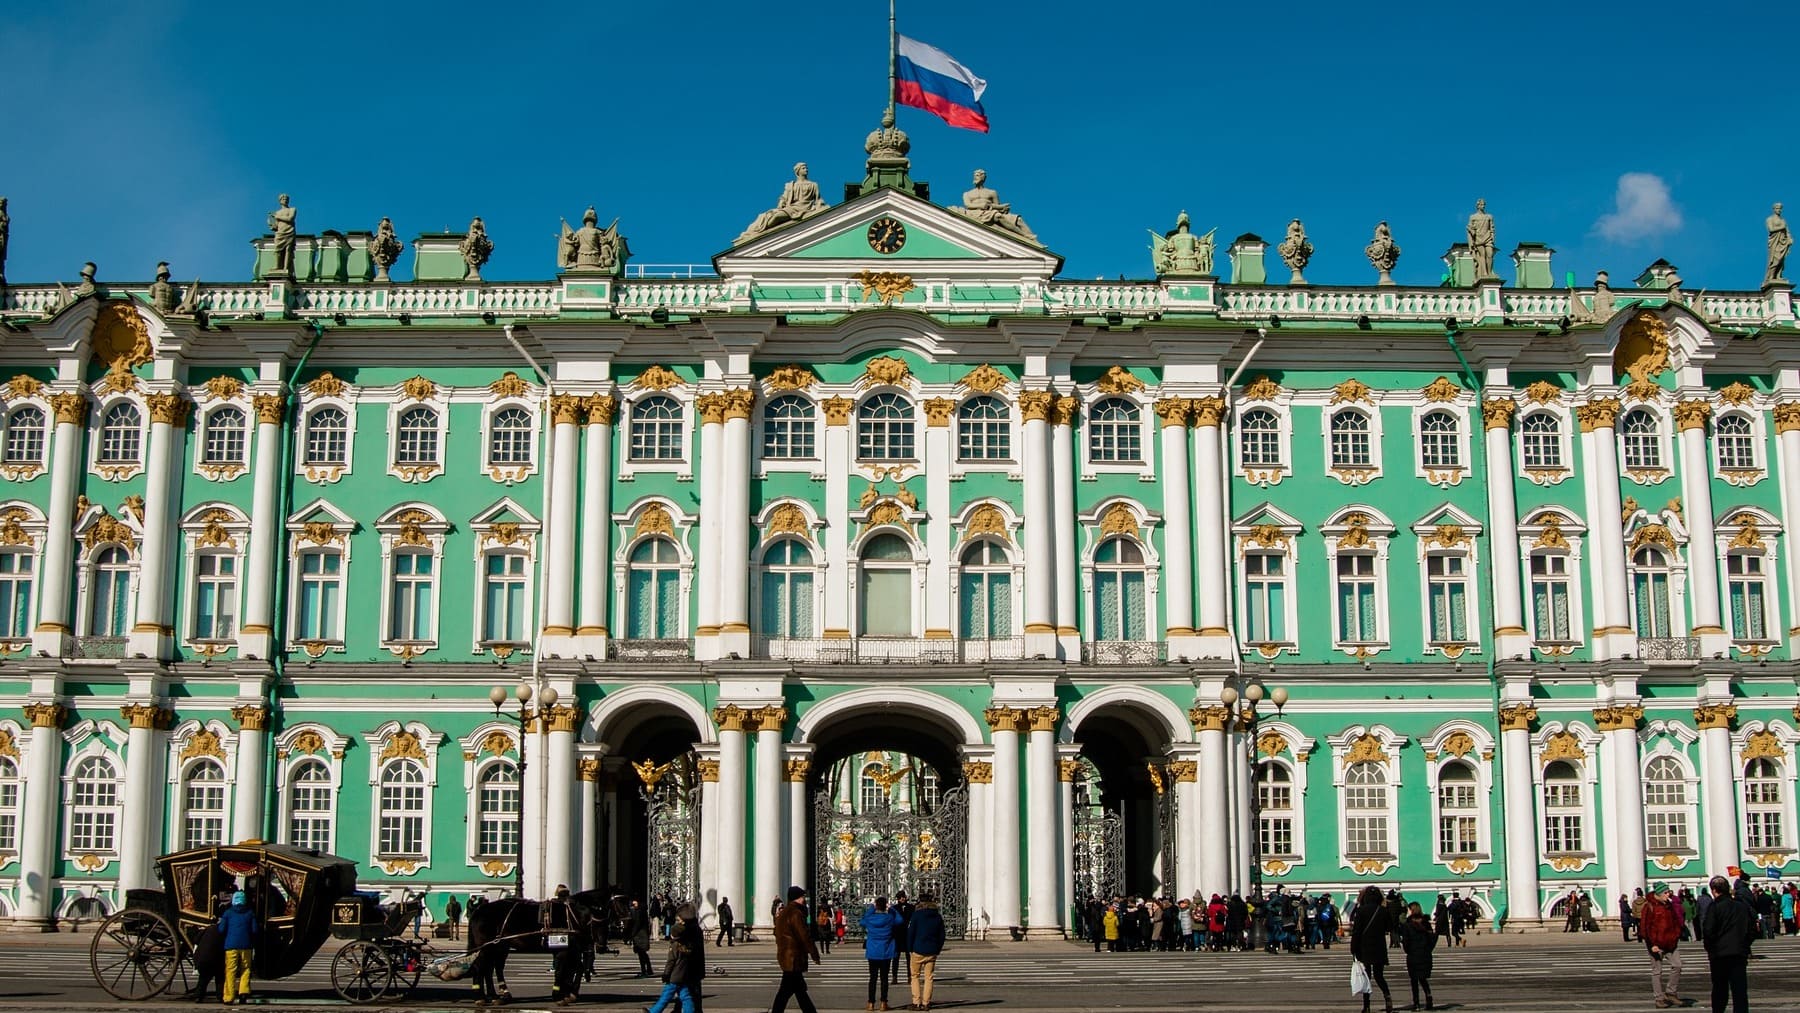 Los datos más sorprendentes del Museo del Hermitage de San Petersburgo